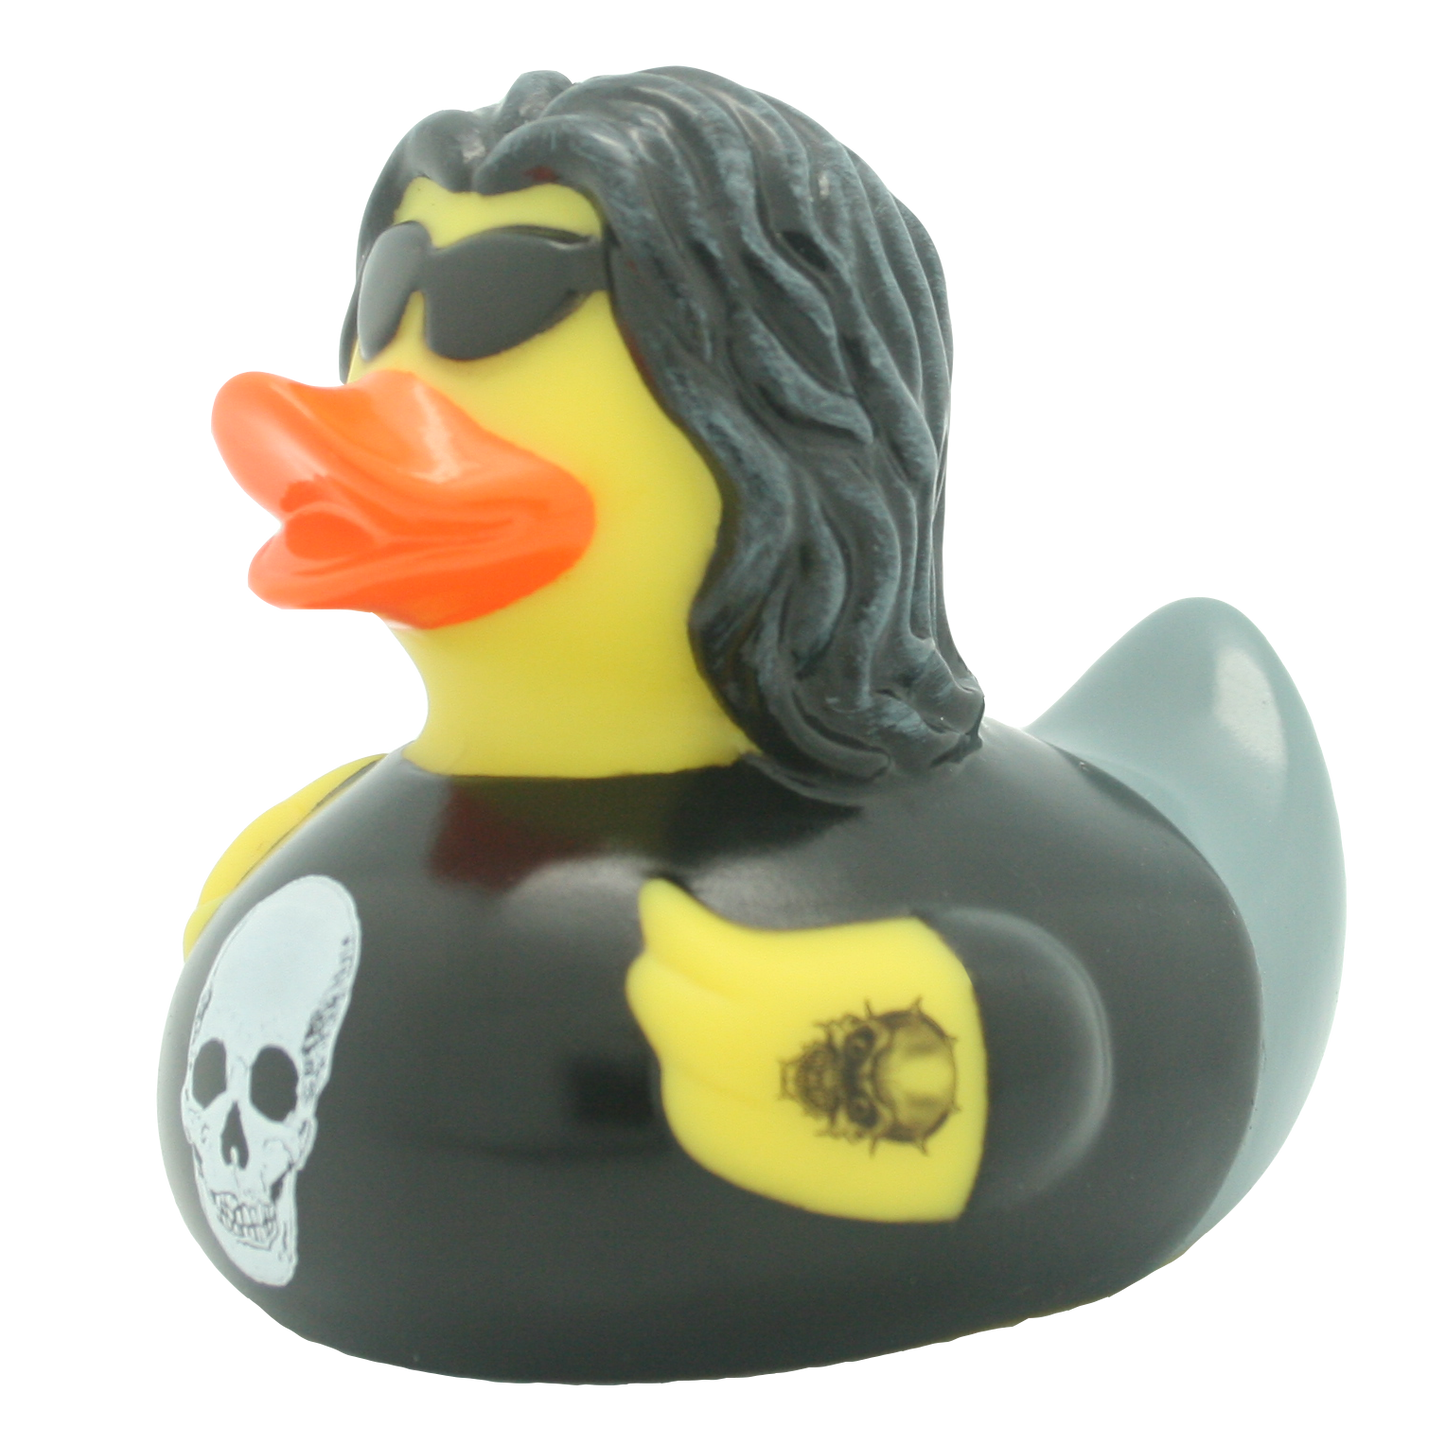 Heavy metal duck.